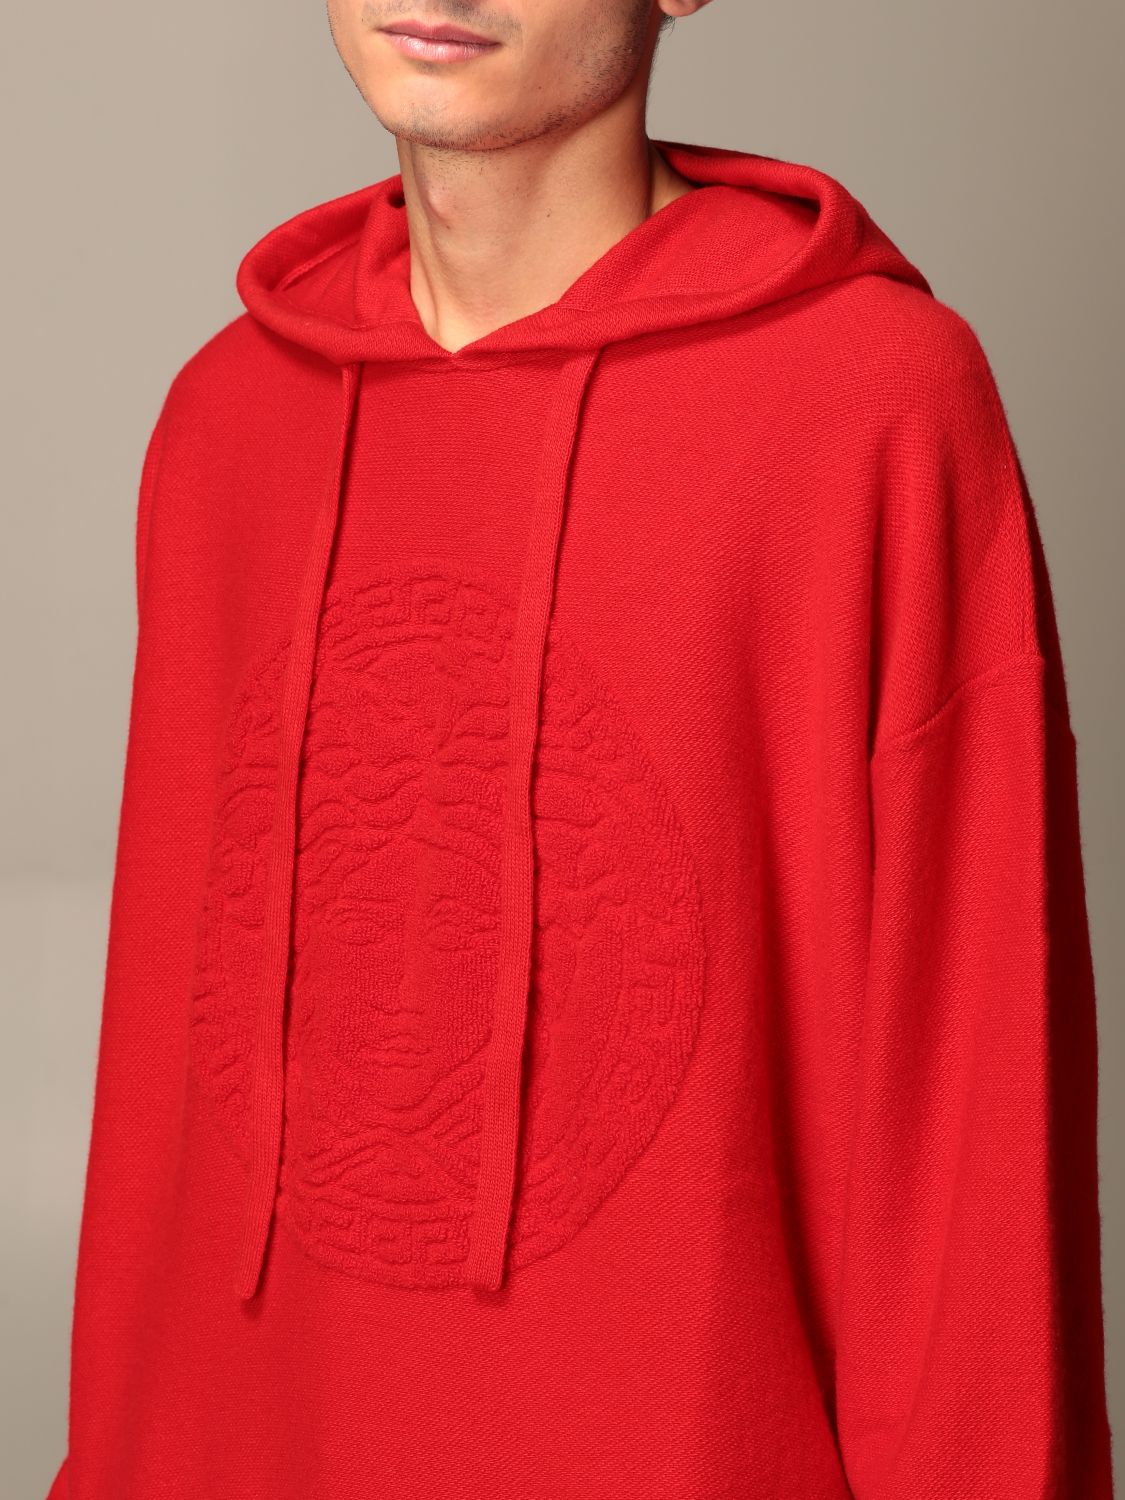 versace hoodie red